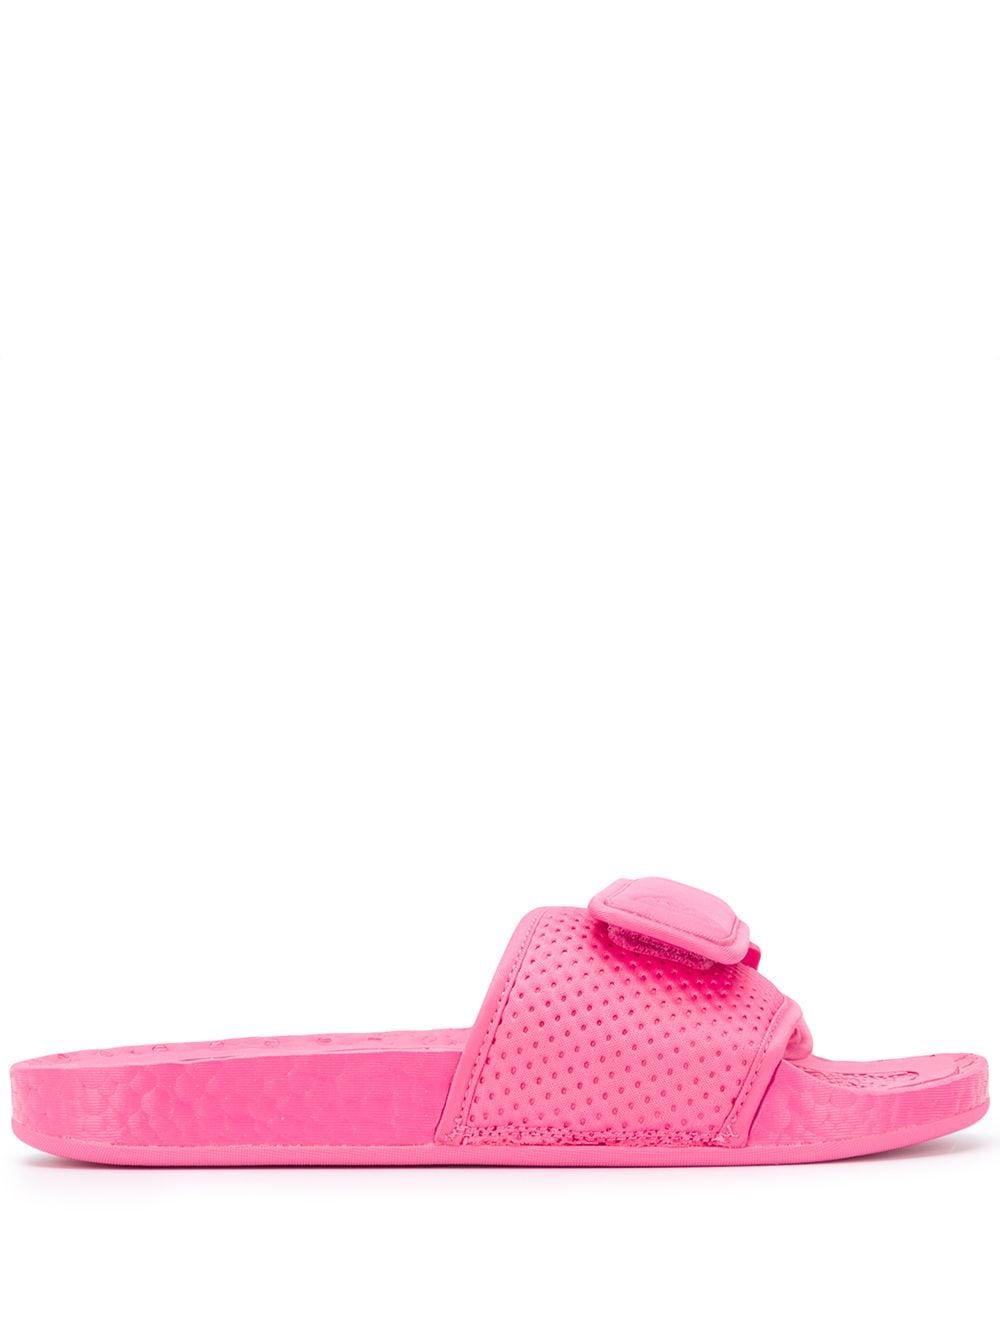 adidas Originals Cotton Boost Flat Slides in Pink - Lyst